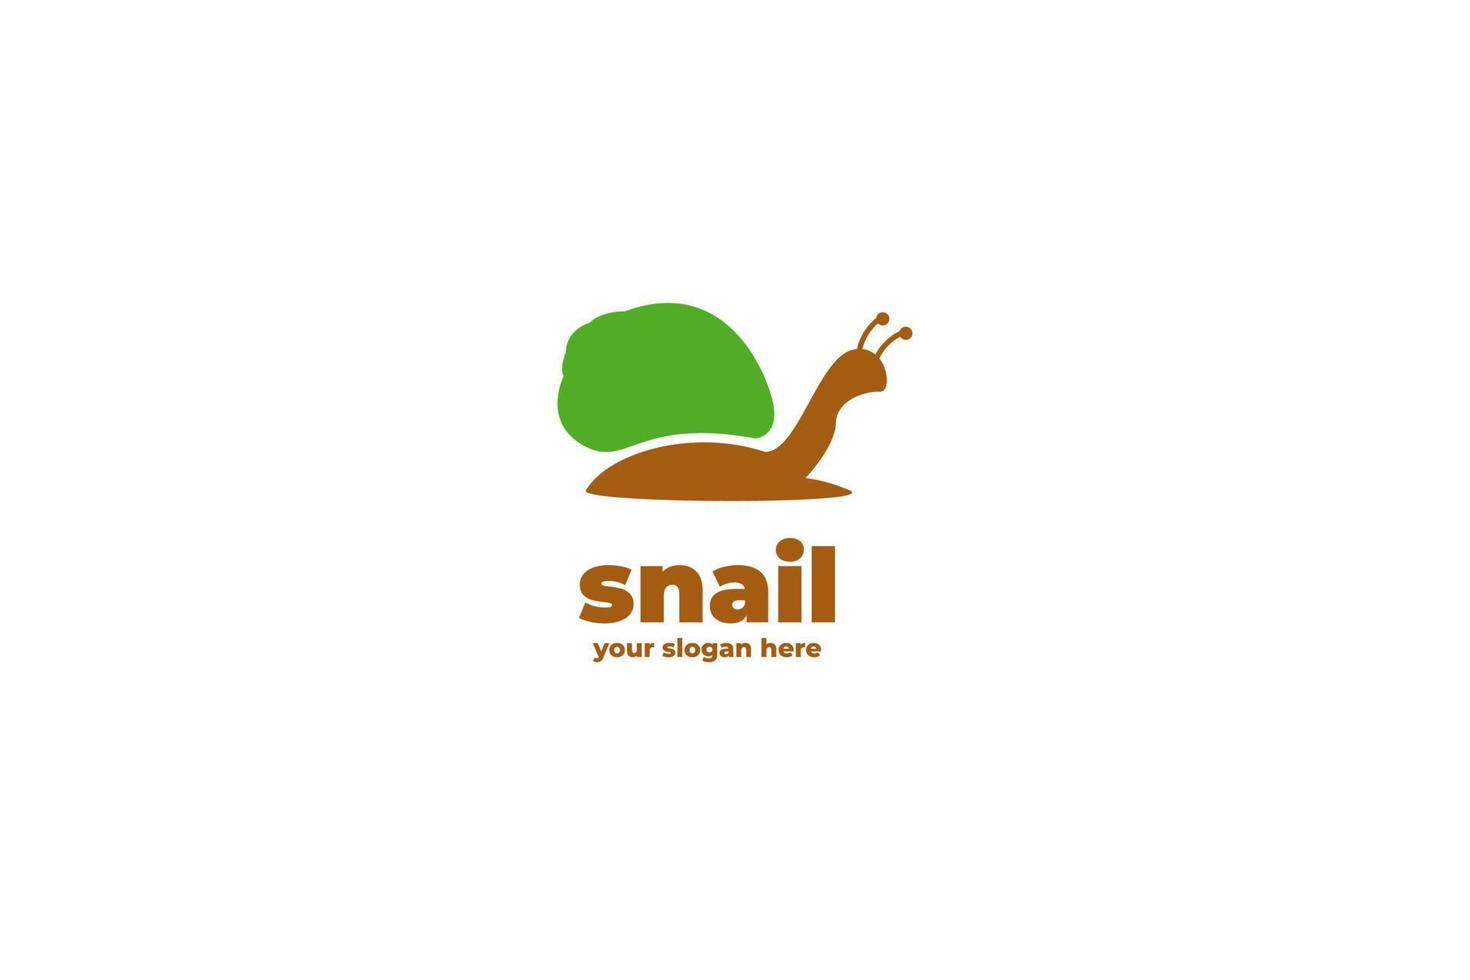 Green circle home snail logo design inspiration vector